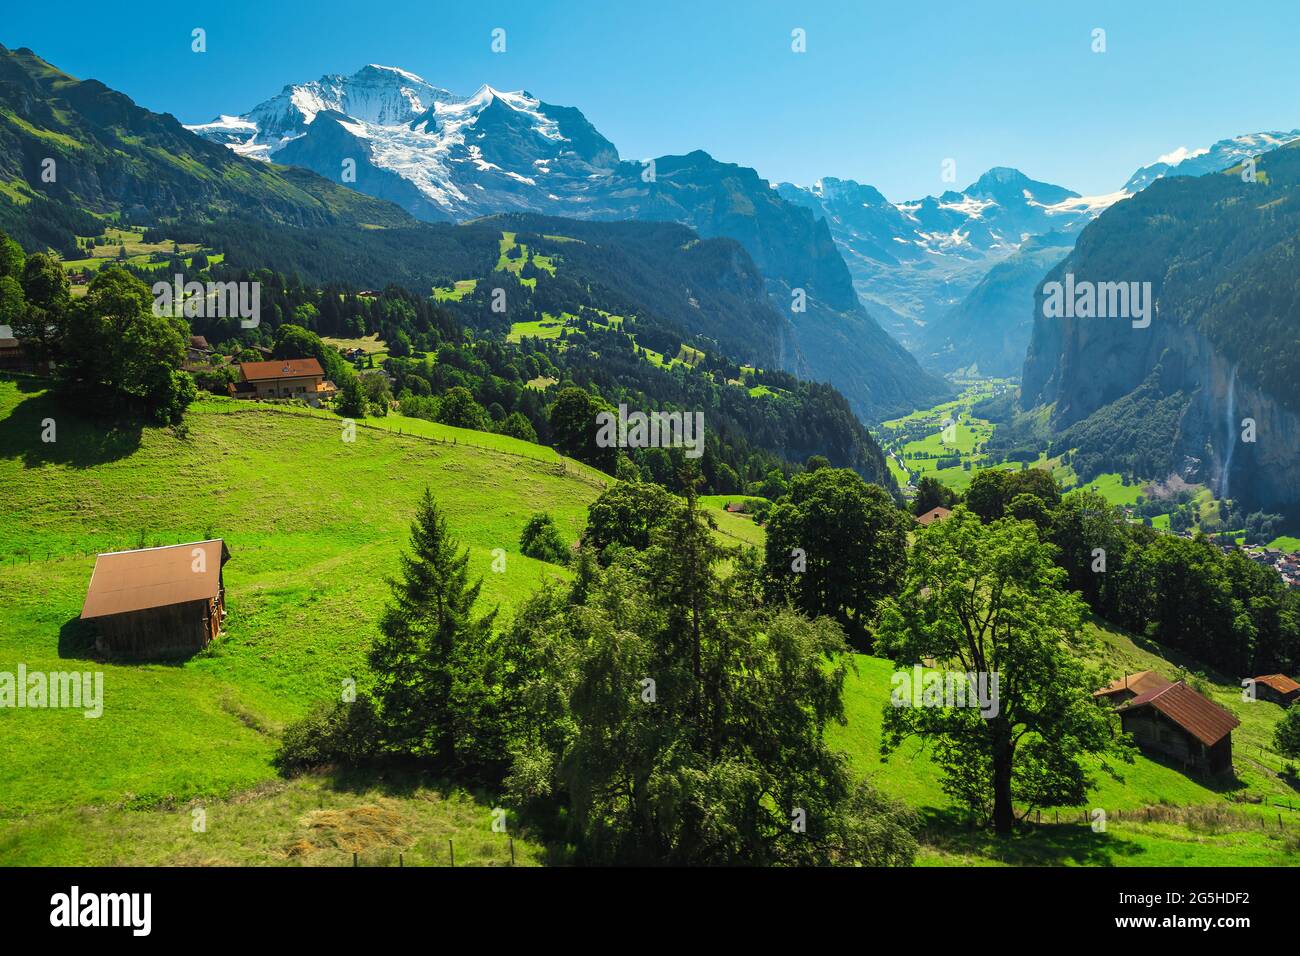 Splendide piste alpine estive con prati verdi e montagne innevate. Località turistica di Wengen e villaggio di Lauterbrunnen nella valle profonda, Bernese o Foto Stock